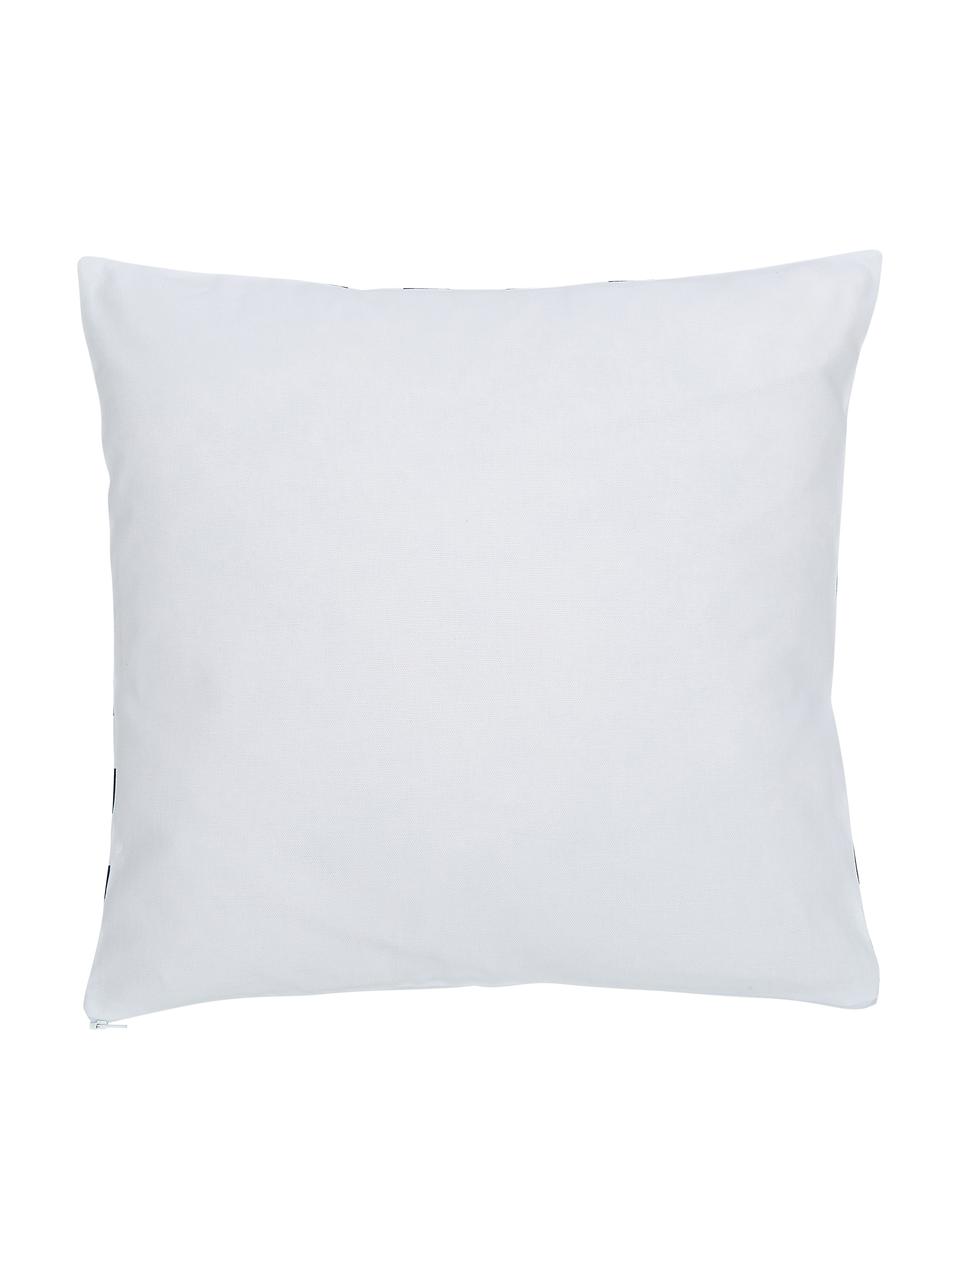 Baumwoll-Kissenhülle Bram mit grafischem Muster, 100% Baumwolle, Weiß, Dunkelblau, 45 x 45 cm